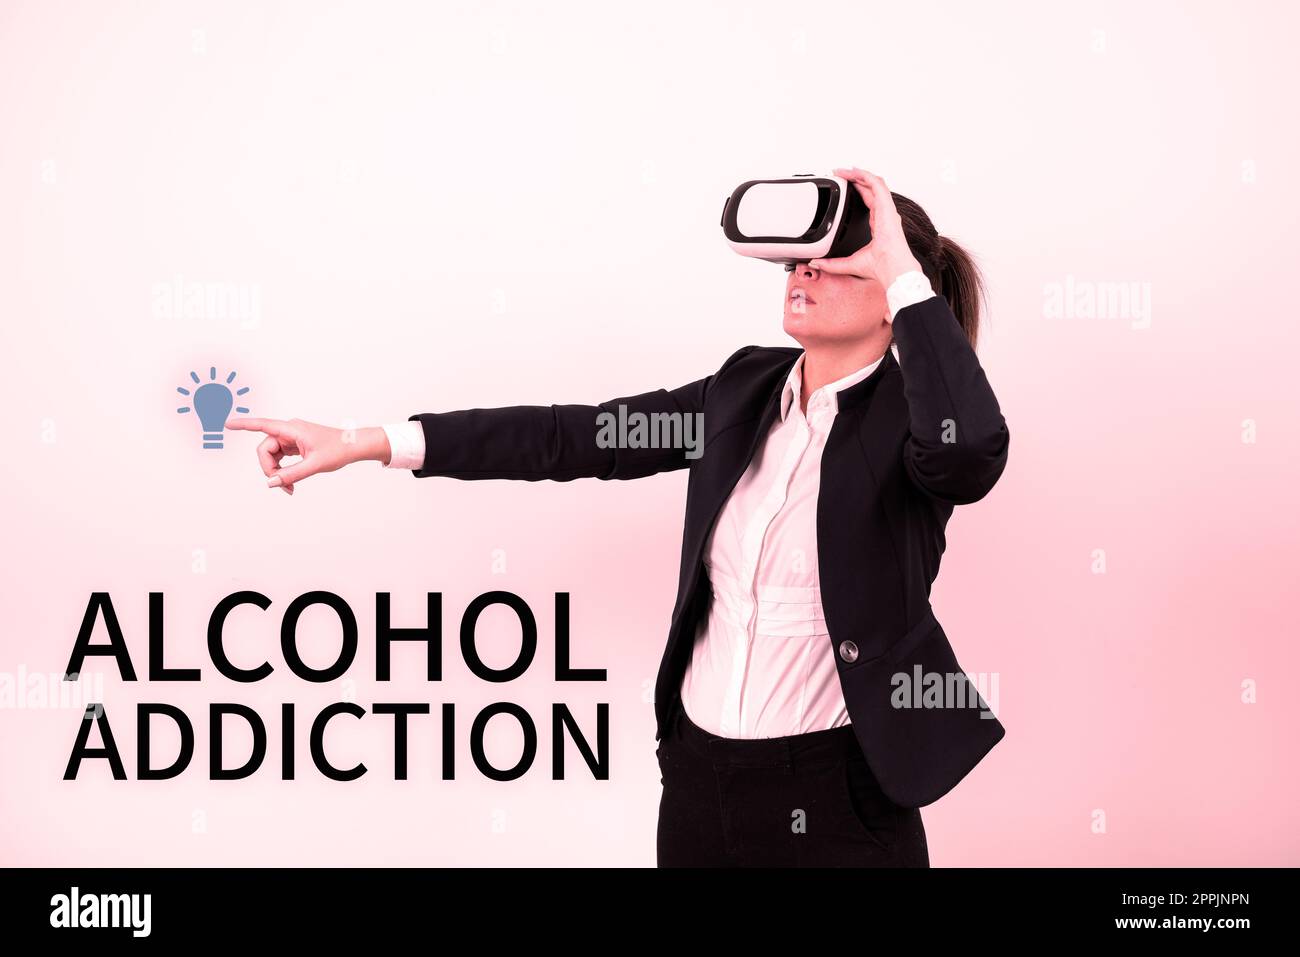 Textzeichen für Alkoholabhängigkeit. Begriff Bedeutung gekennzeichnet durch häufigen und übermäßigen Konsum alkoholischer Getränke Stockfoto